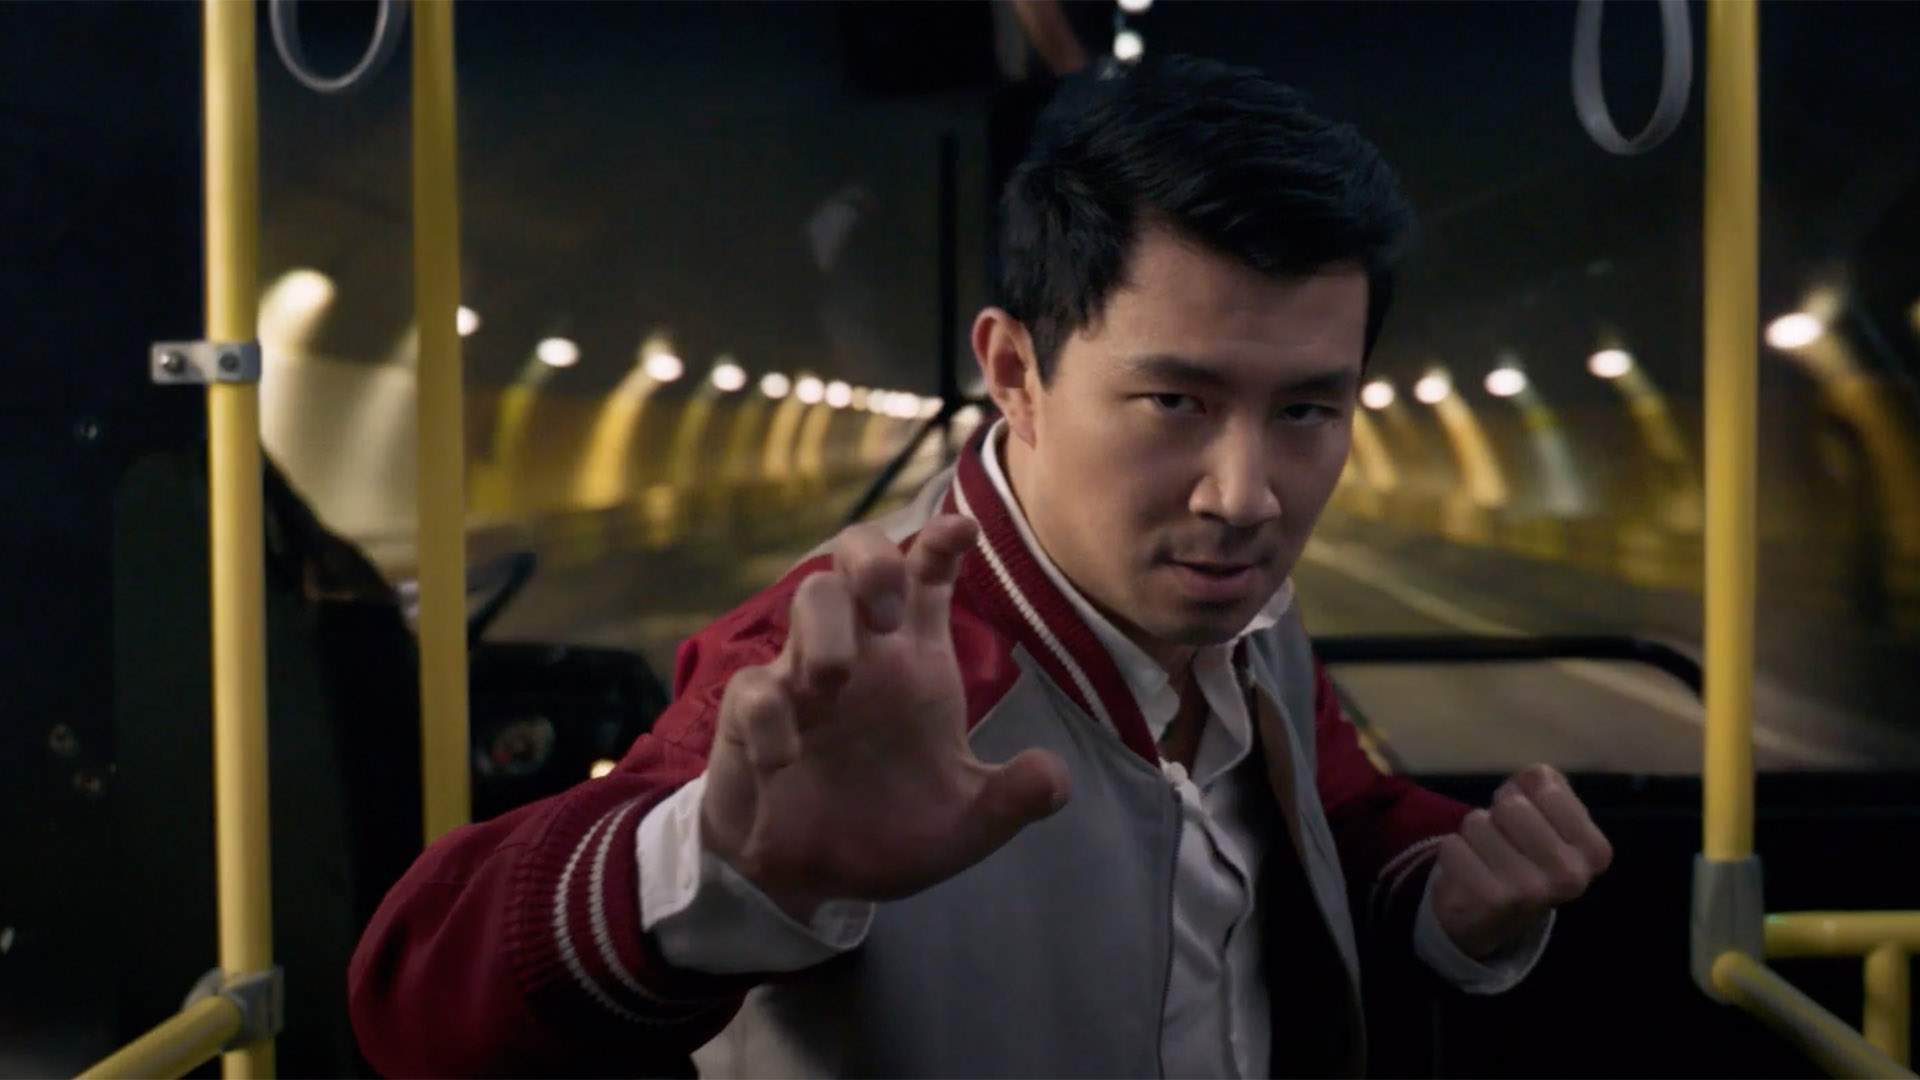 سم لیو در نقش شانگ چی در اتوبوس در حال مبارزه و انجام حرکات رزمی در فیلم Shang-Chi and the Legend of the Ten Rings